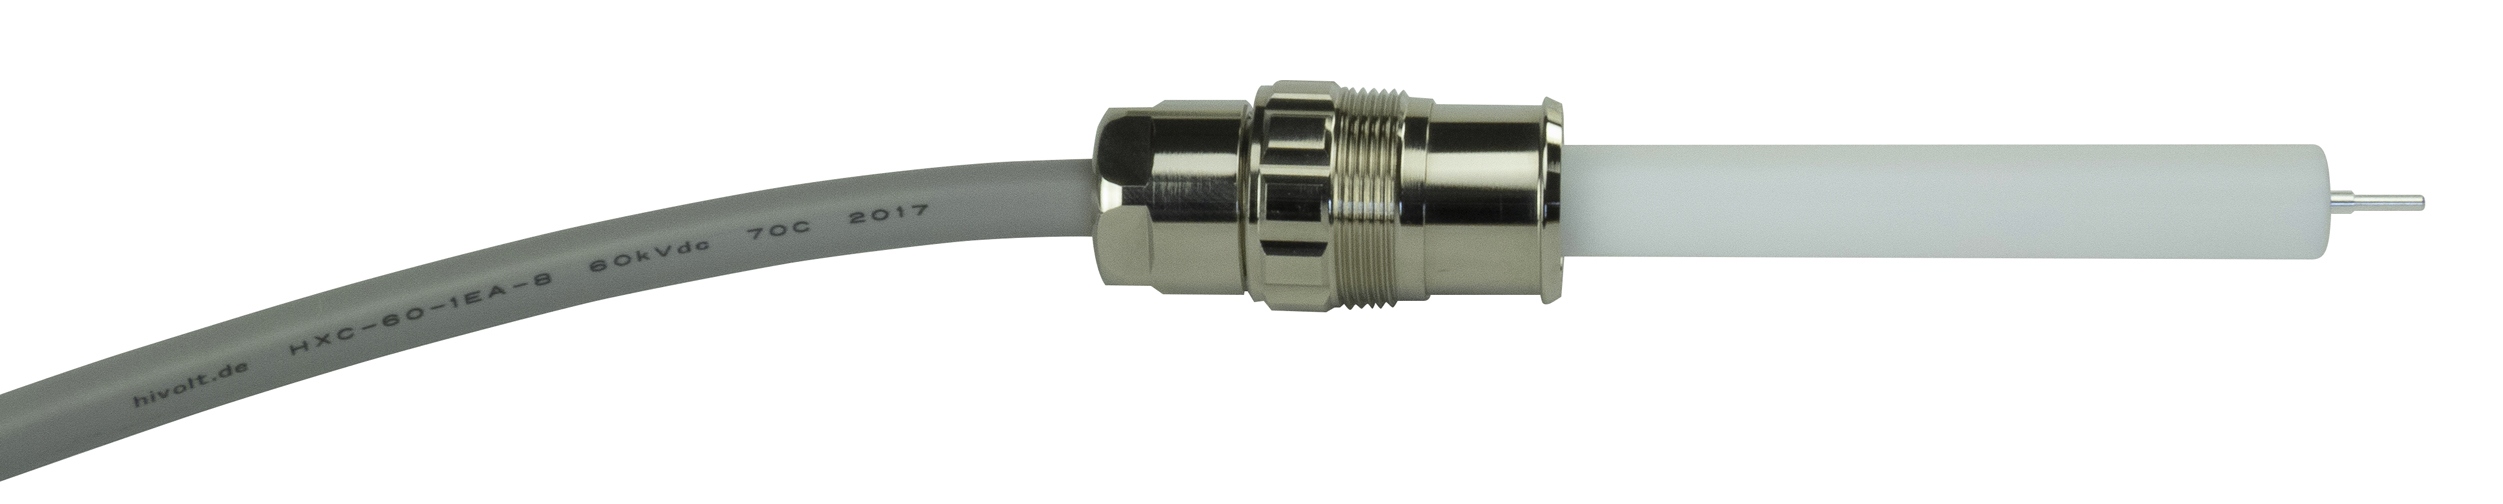 Assemblage connecteur haute tension GES HC7 HXC-60-1EA8